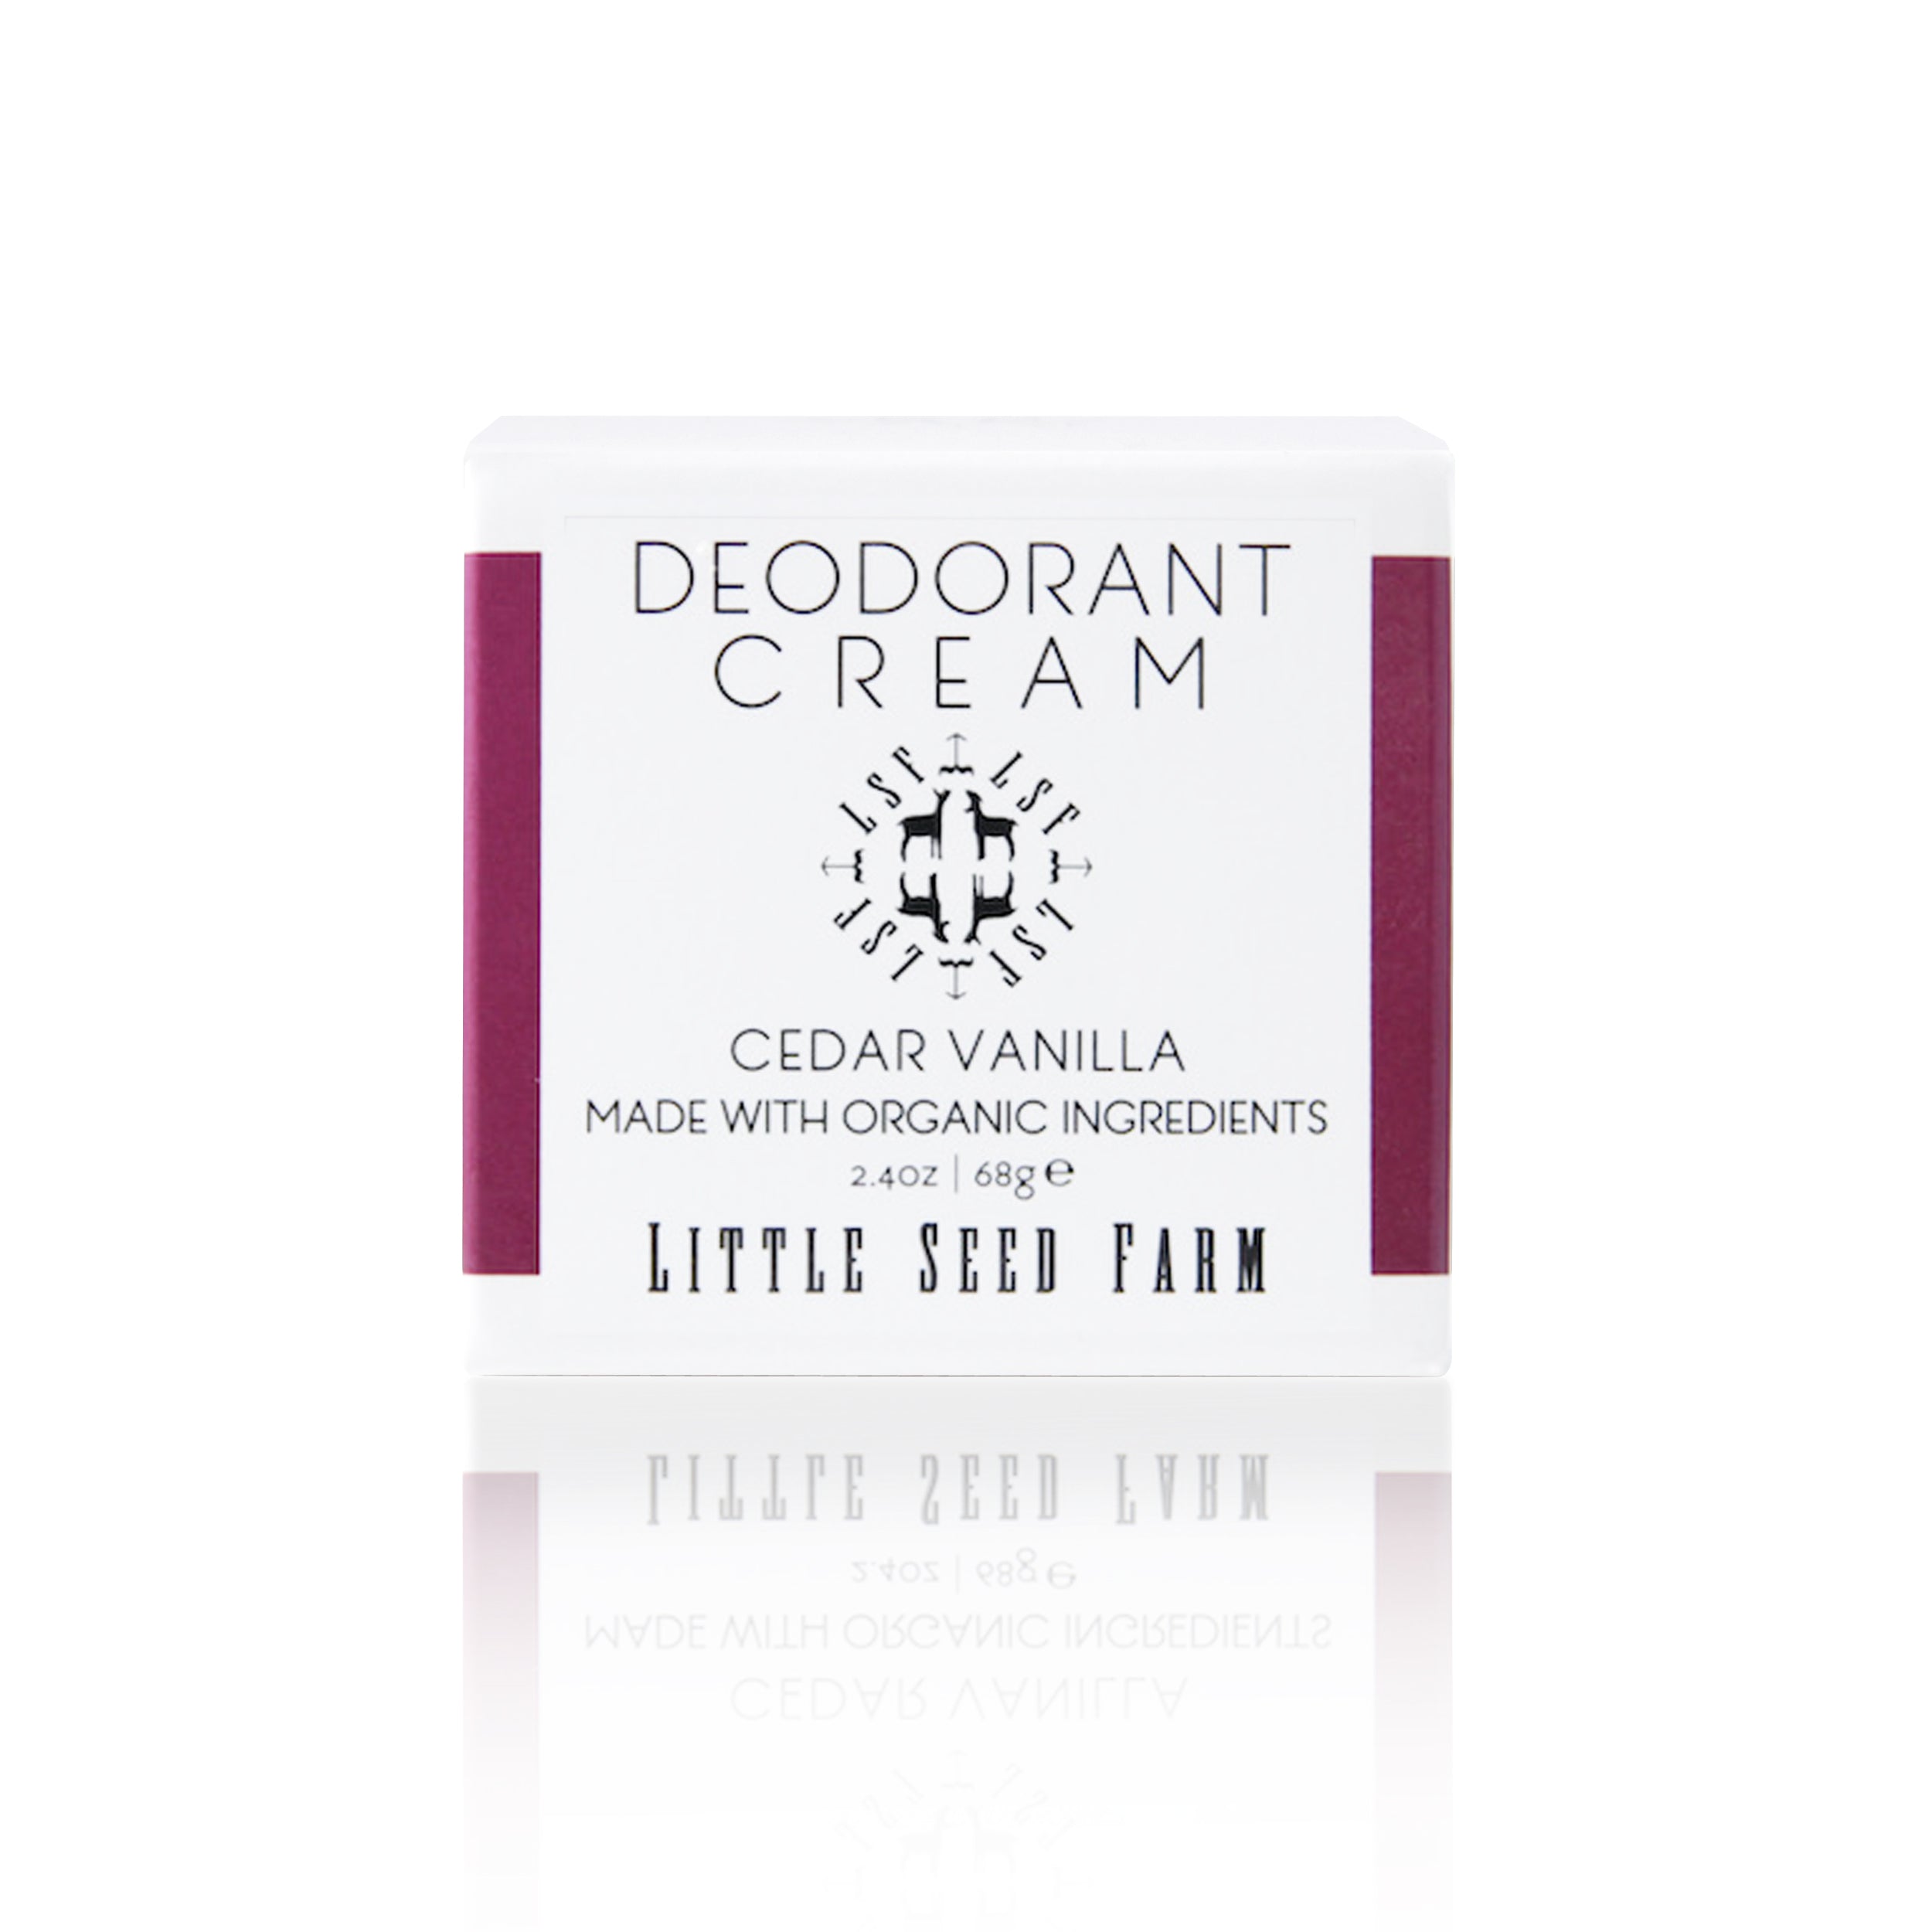 Deodorant Creams